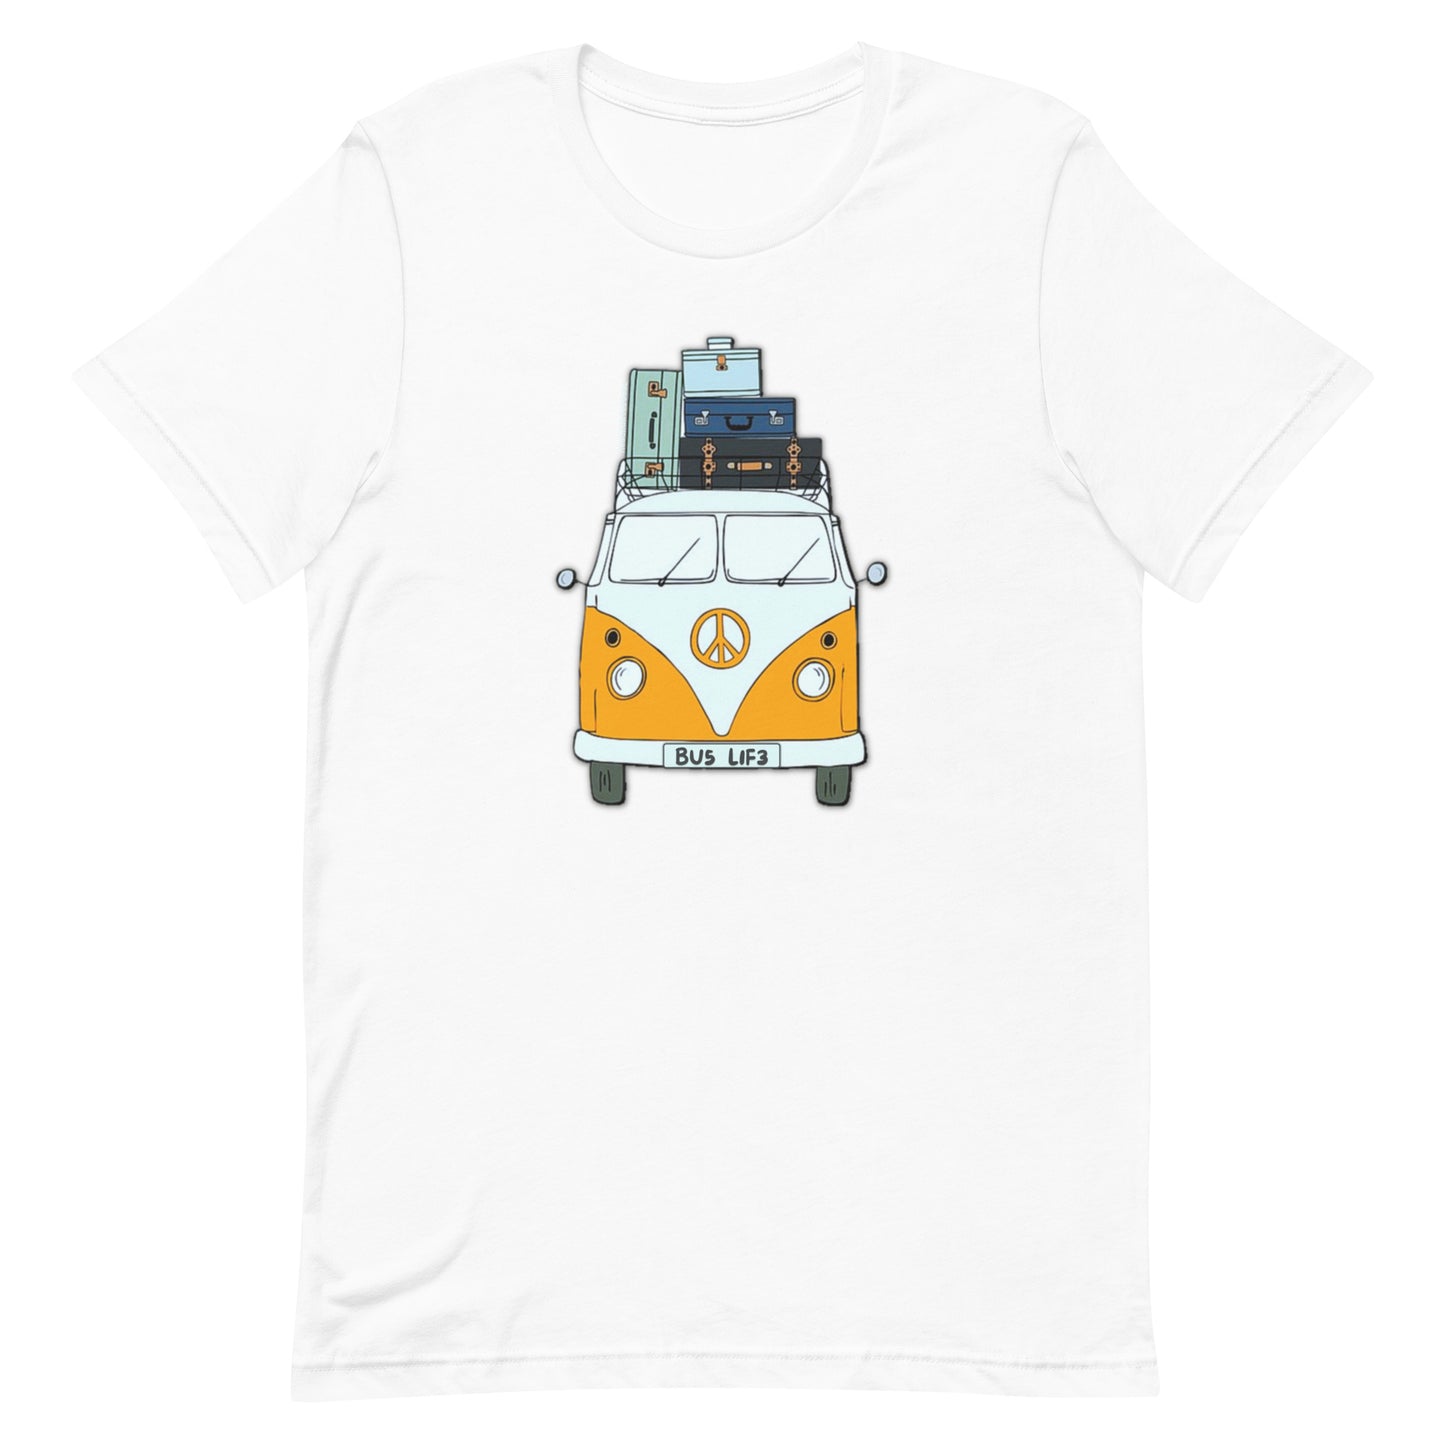 Bus Life T-Shirt